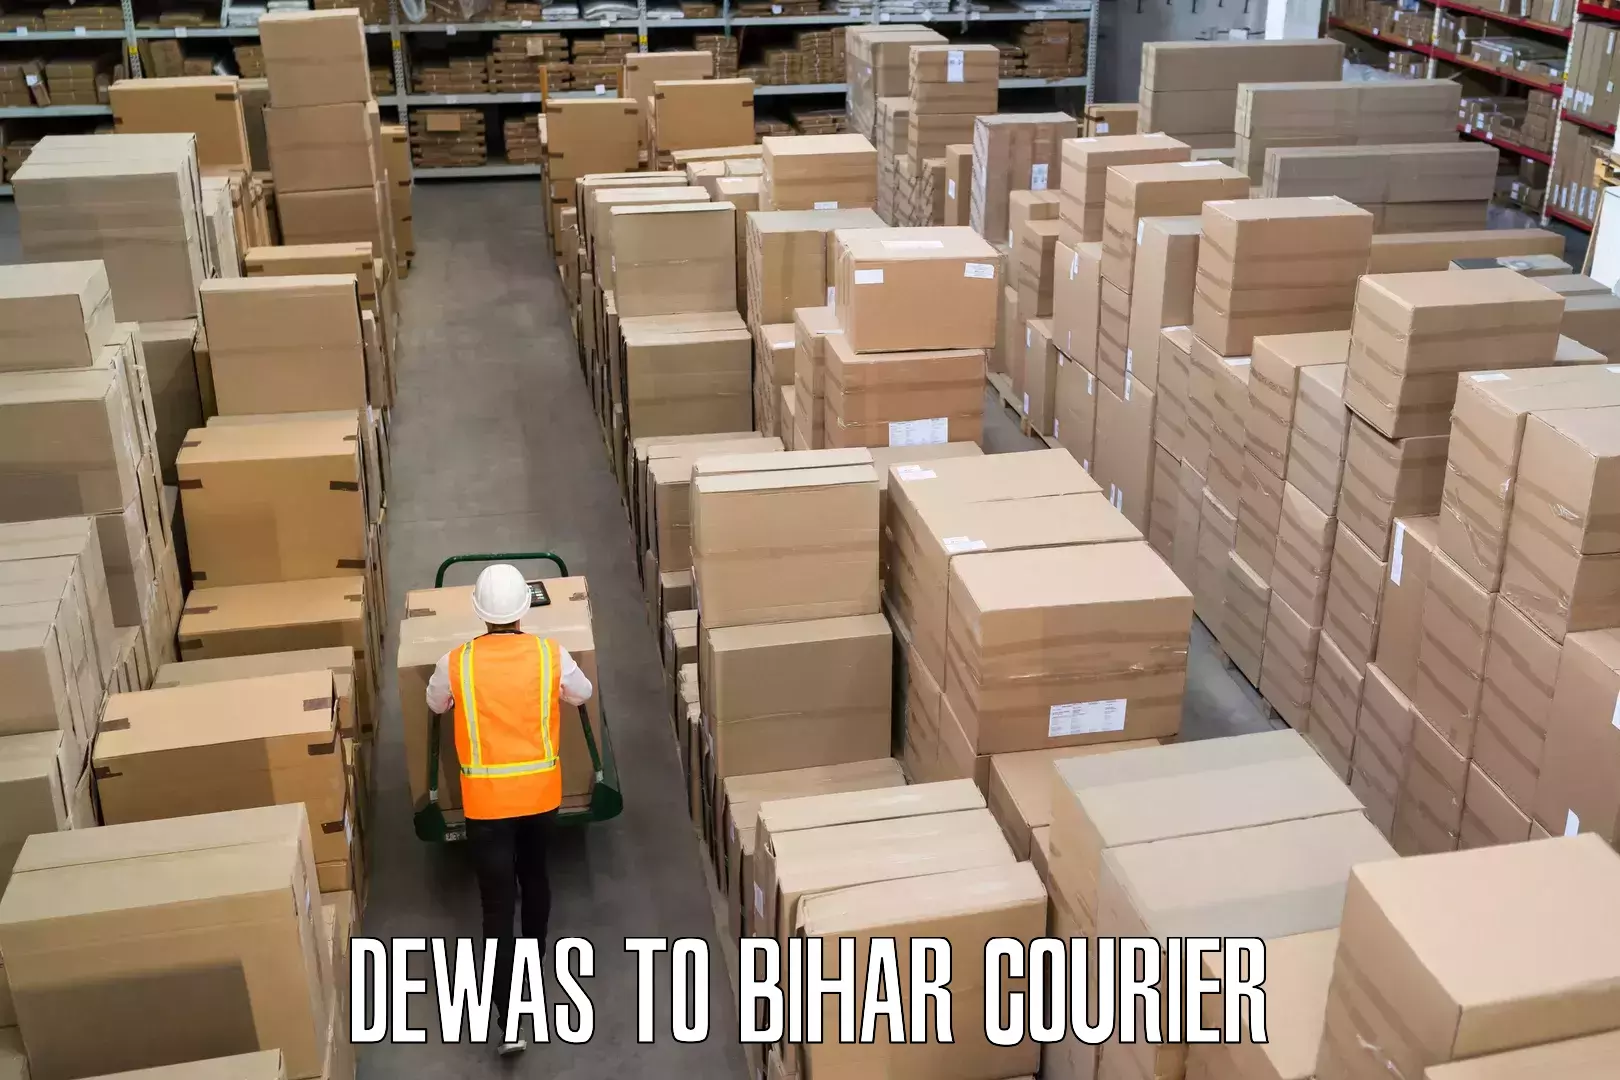 Baggage relocation service Dewas to Bihar